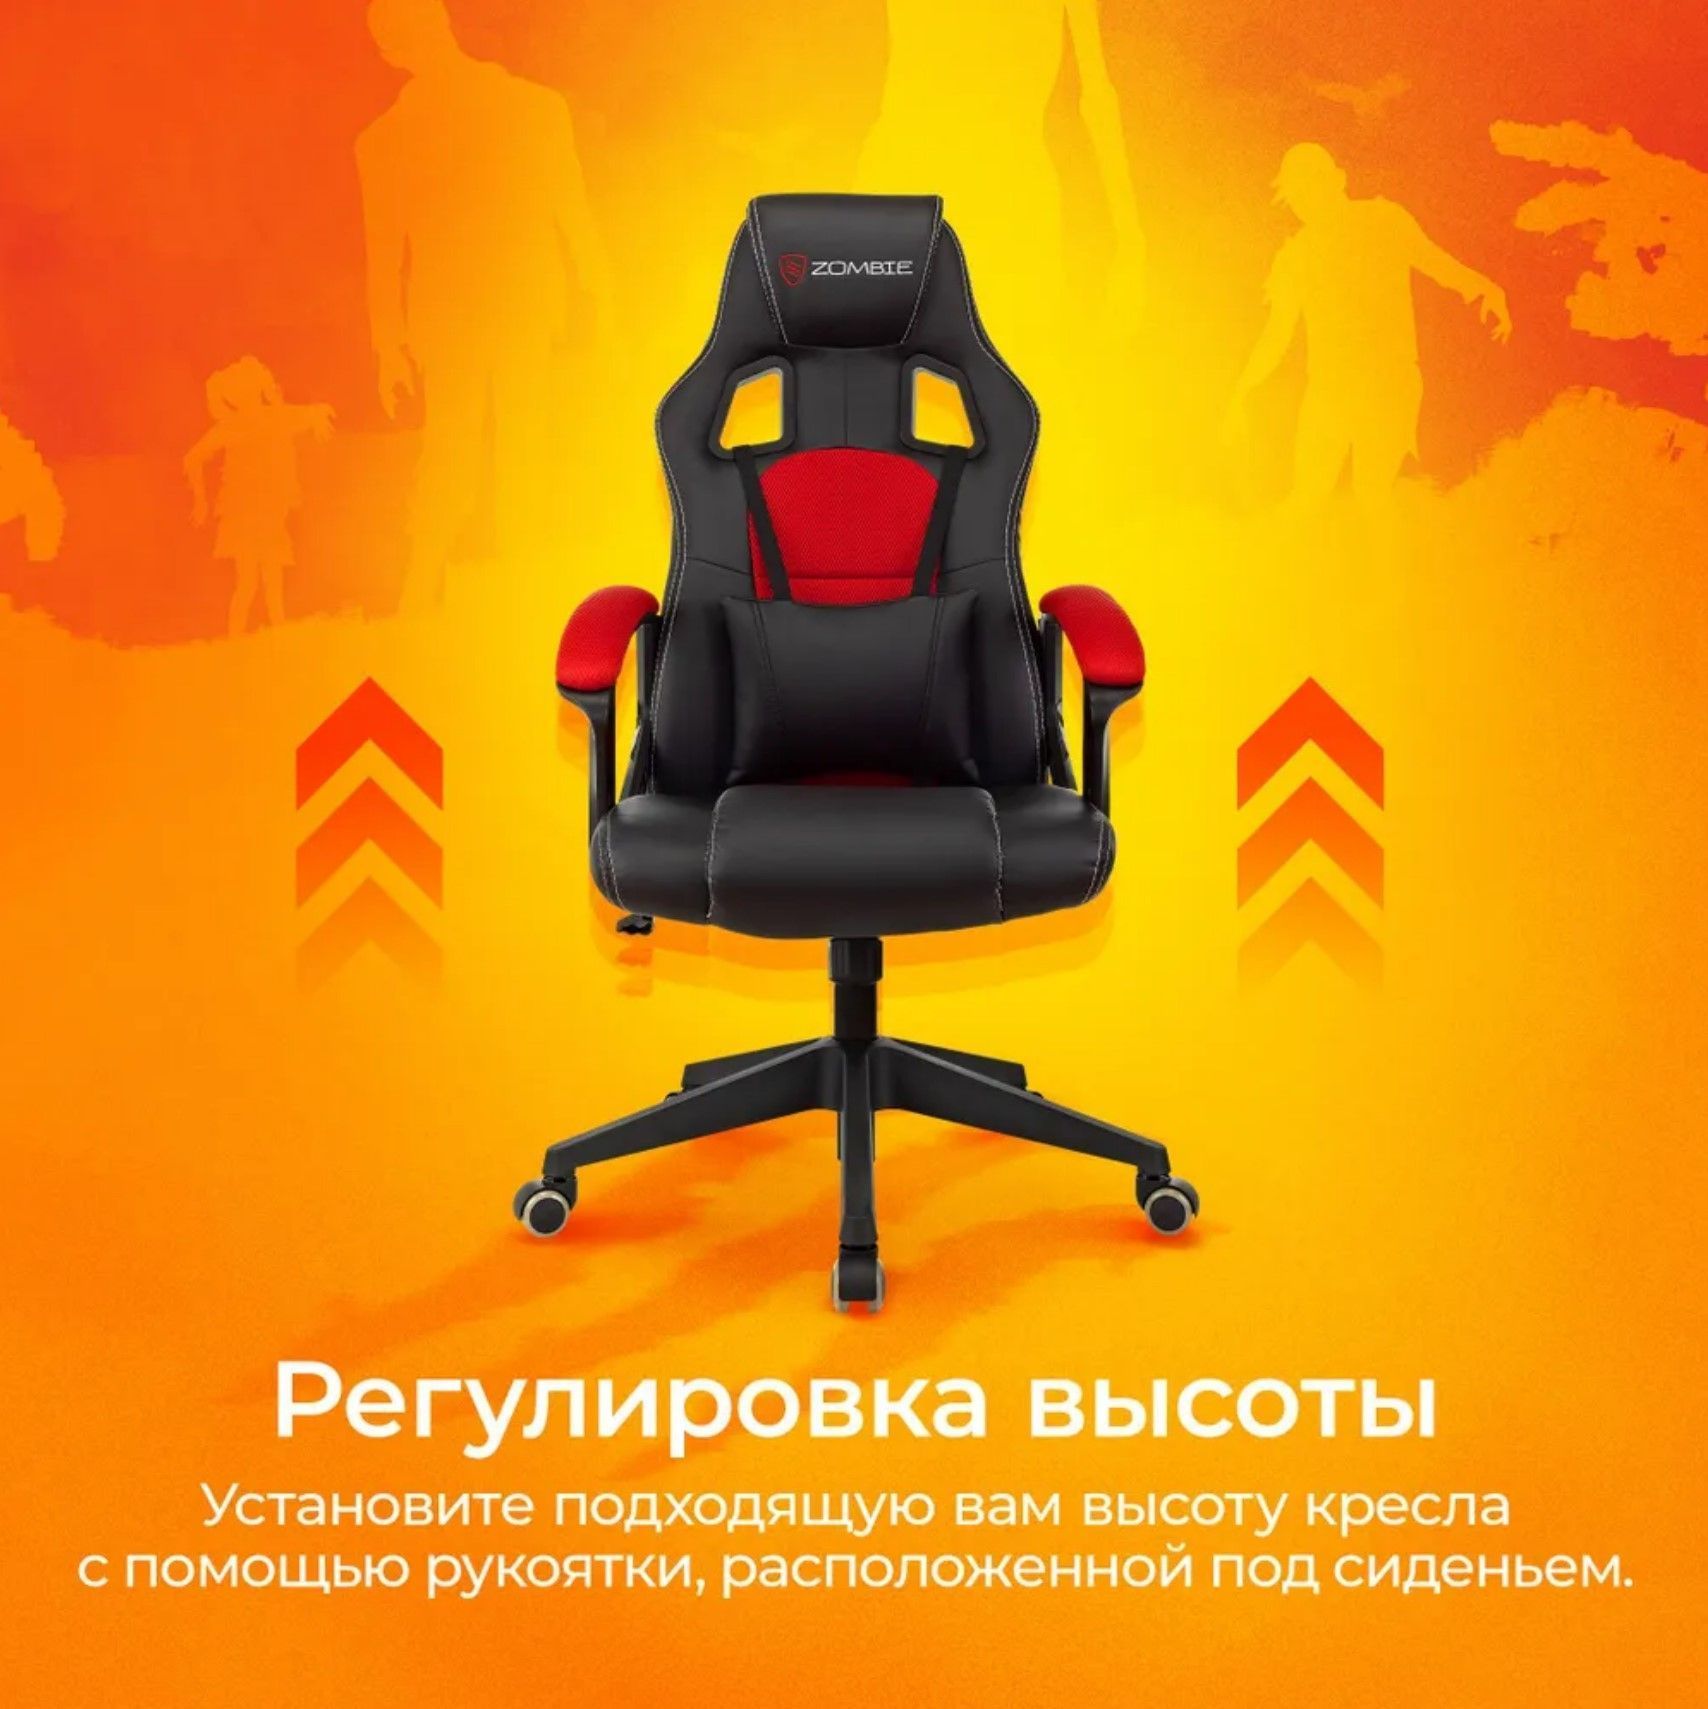 Кресло игровое Zombie Arena черный/красный